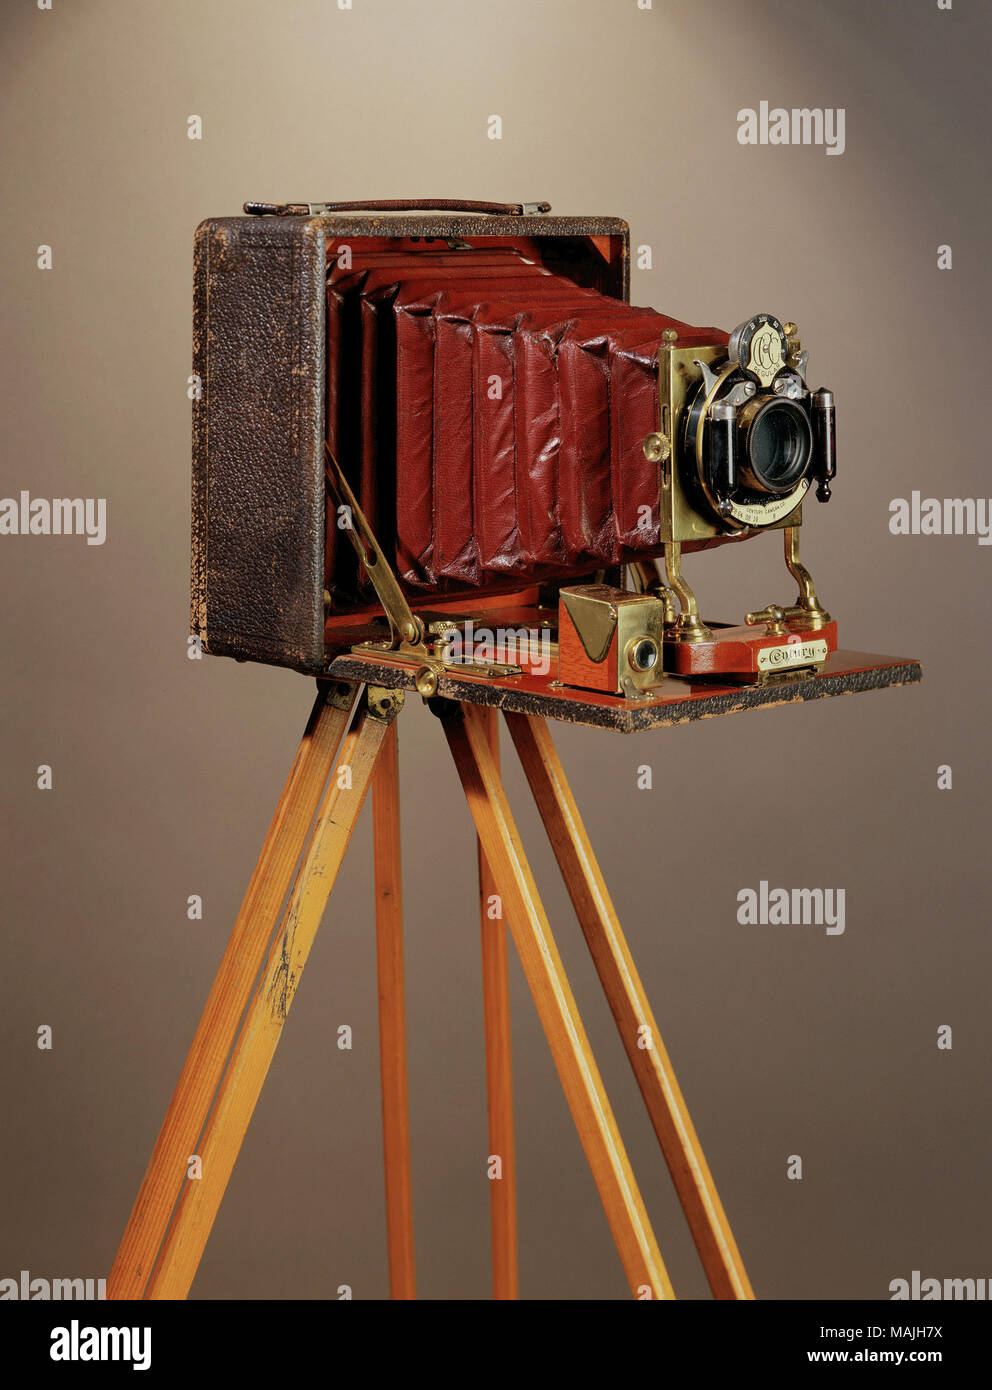 Holz- kamera Stativ mit Metallbügel und Filz, die Plattform von Rochester  Optical Co Titel: Kamerastativ von Rochester Optical Co. ca. 1900.  Rochester Optical Co Stockfotografie - Alamy